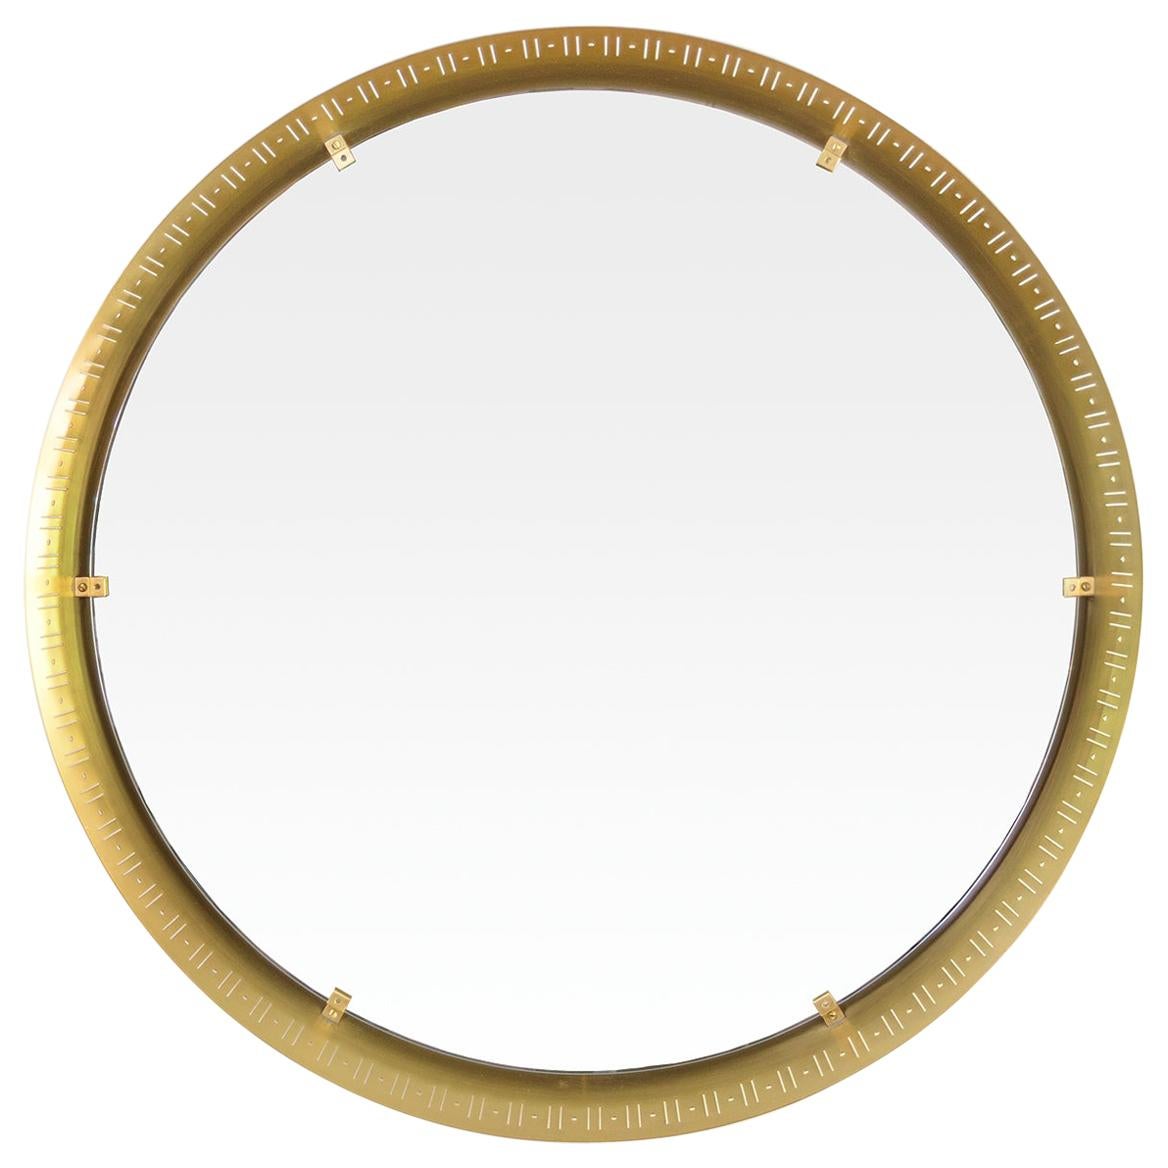 Ein skandinavisch-moderner, runder Spiegel aus poliertem Messing. Der Rahmen ist mit einem 